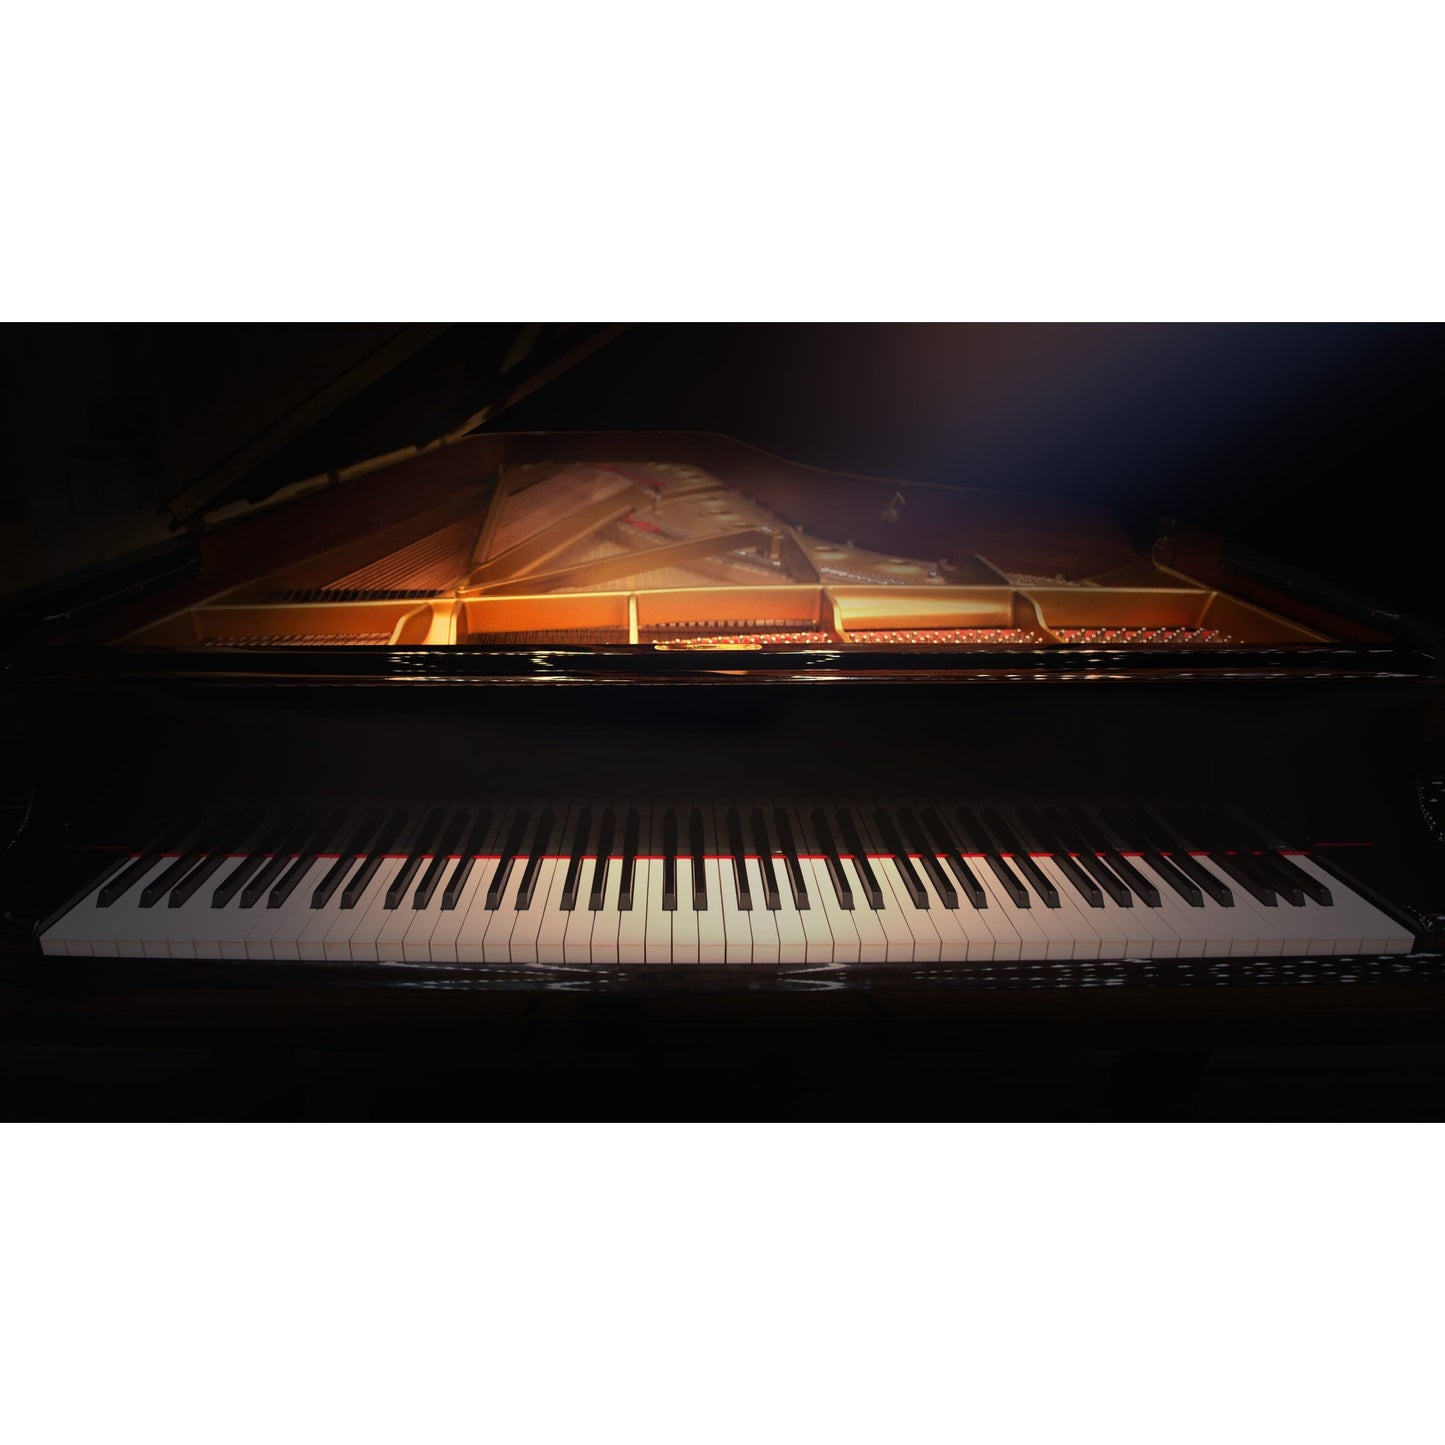 Universal Audio Ravel Grand Piano